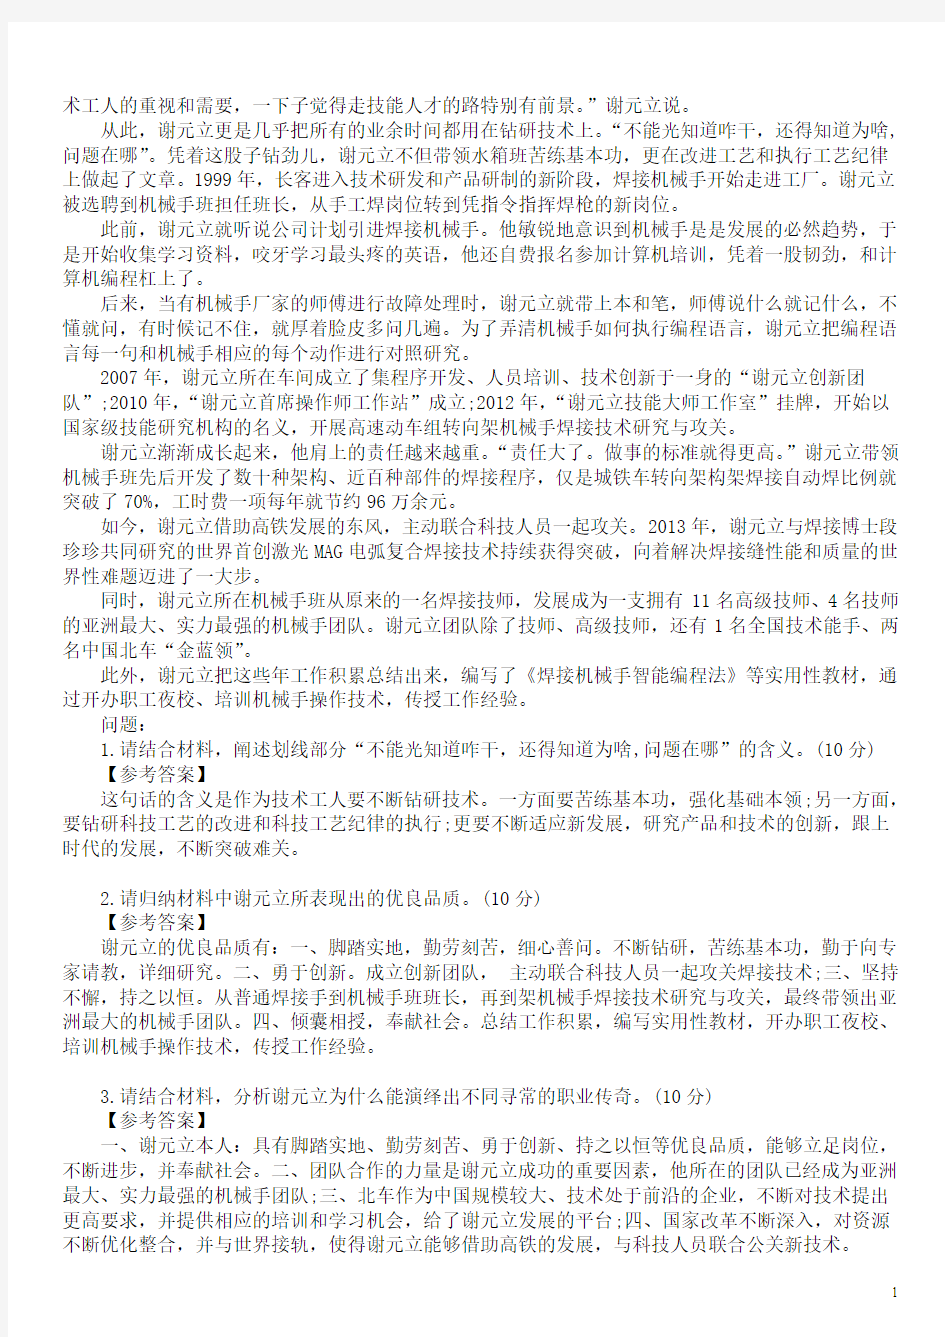 2015年湖北省省直事业单位招聘考试《综合应用能力测试(B类)》真题及标准答案